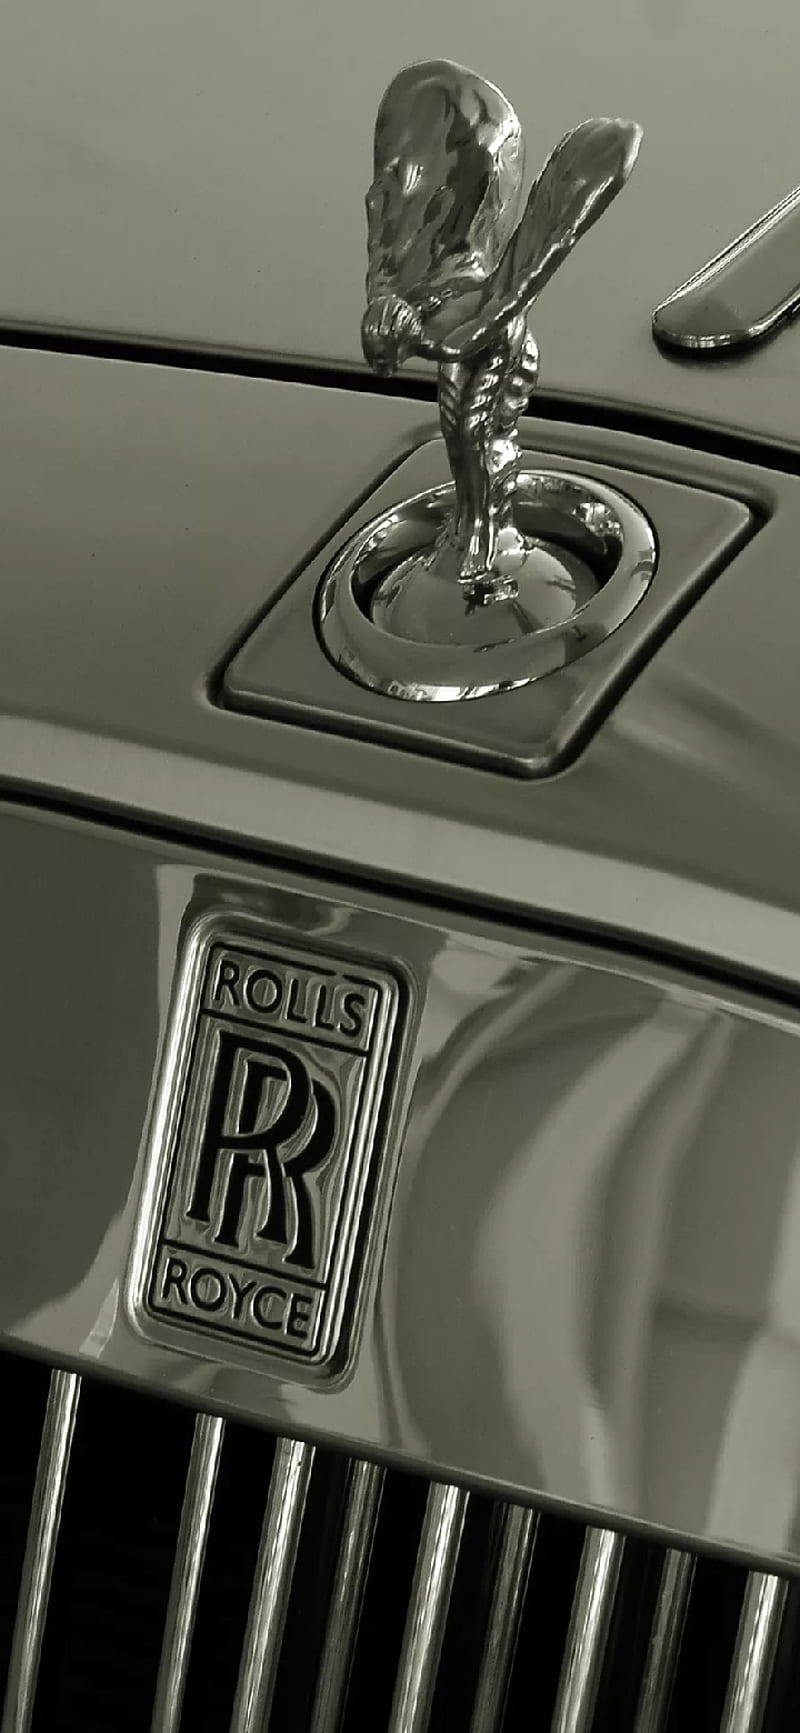 HD rolls royce logo wallpapers | Peakpx